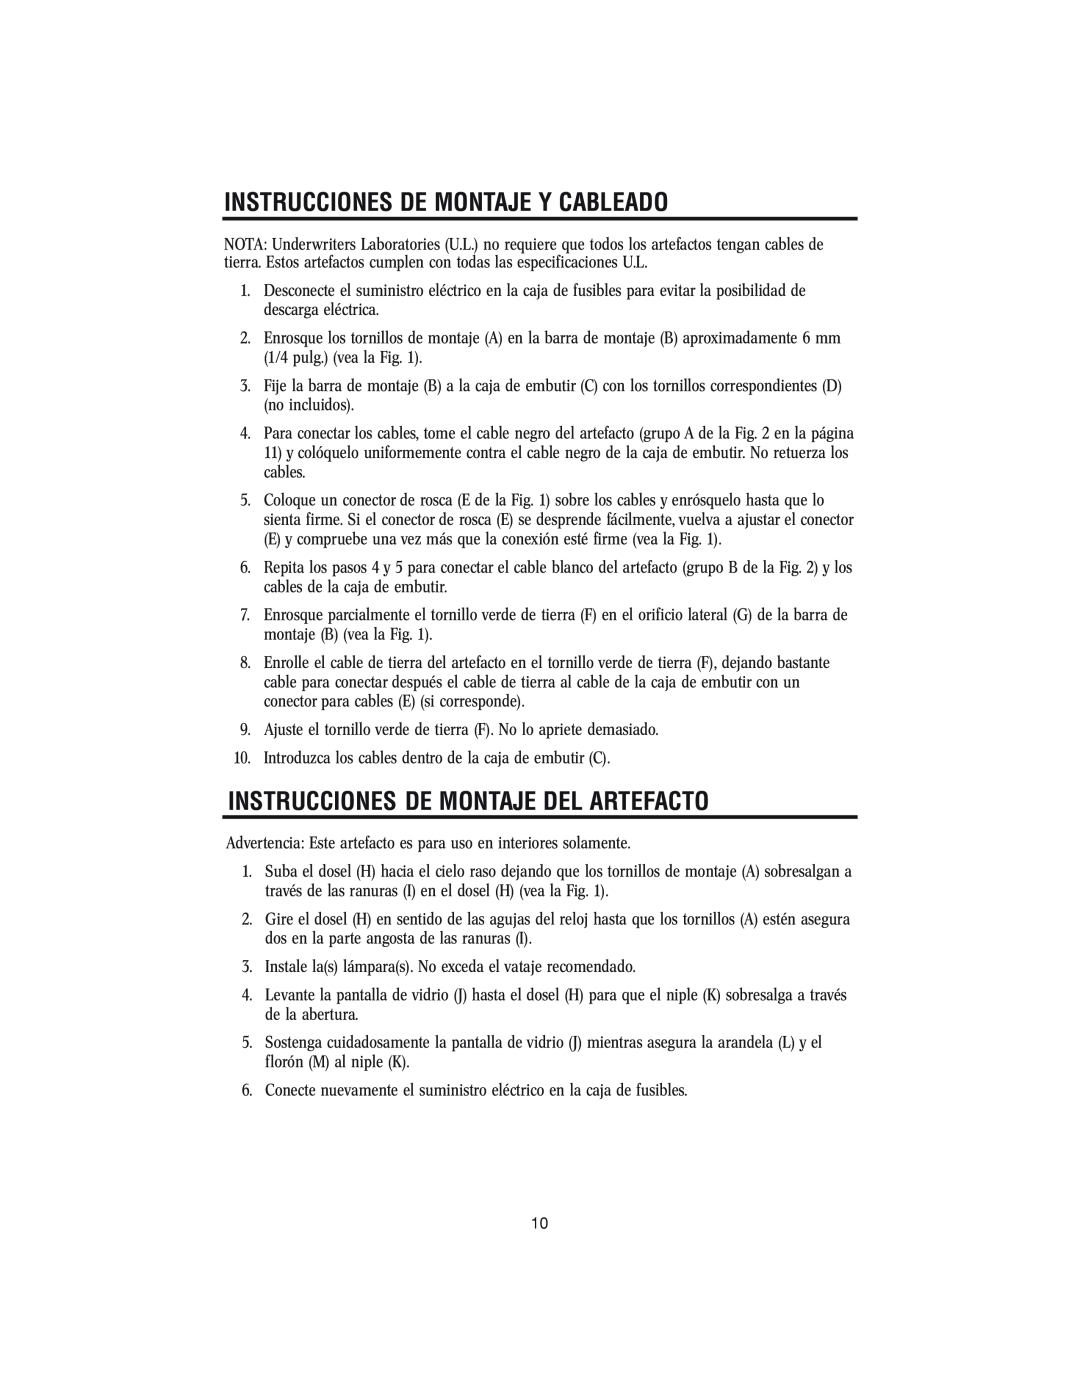 Westinghouse W-145 owner manual Instrucciones De Montaje Y Cableado, Instrucciones De Montaje Del Artefacto 